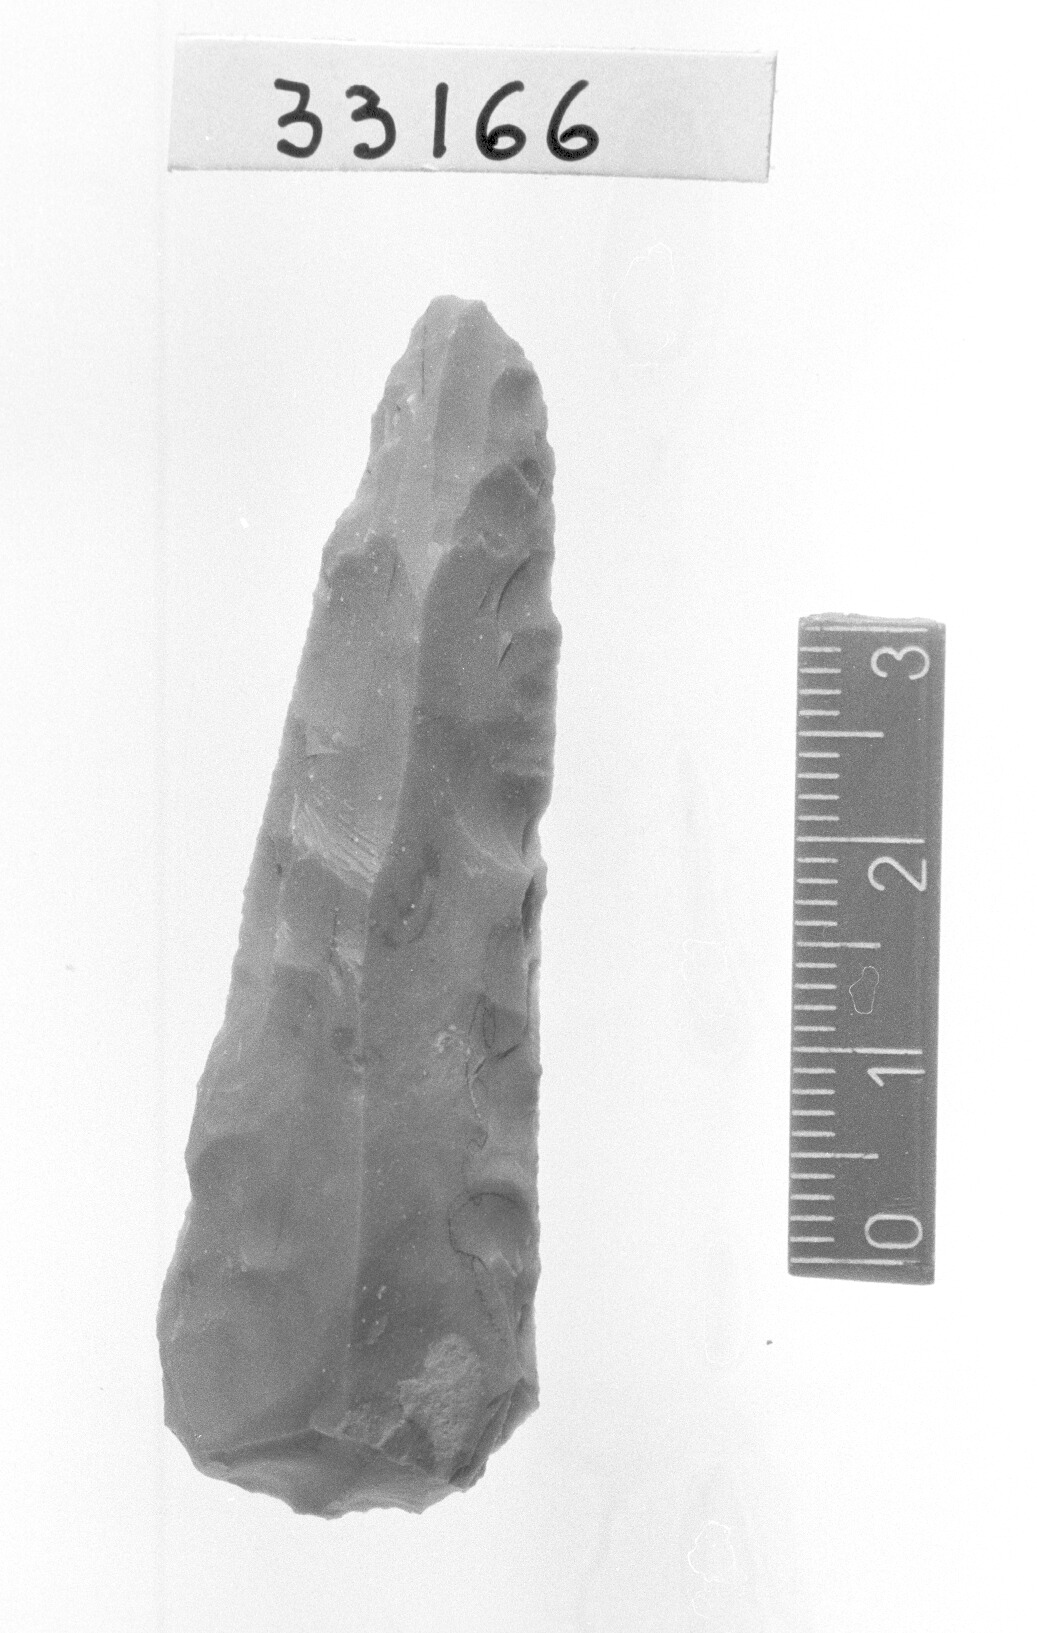 grattatoio frontale lungo a ritocco laterale - Epigravettiano (Paleolitico superiore)